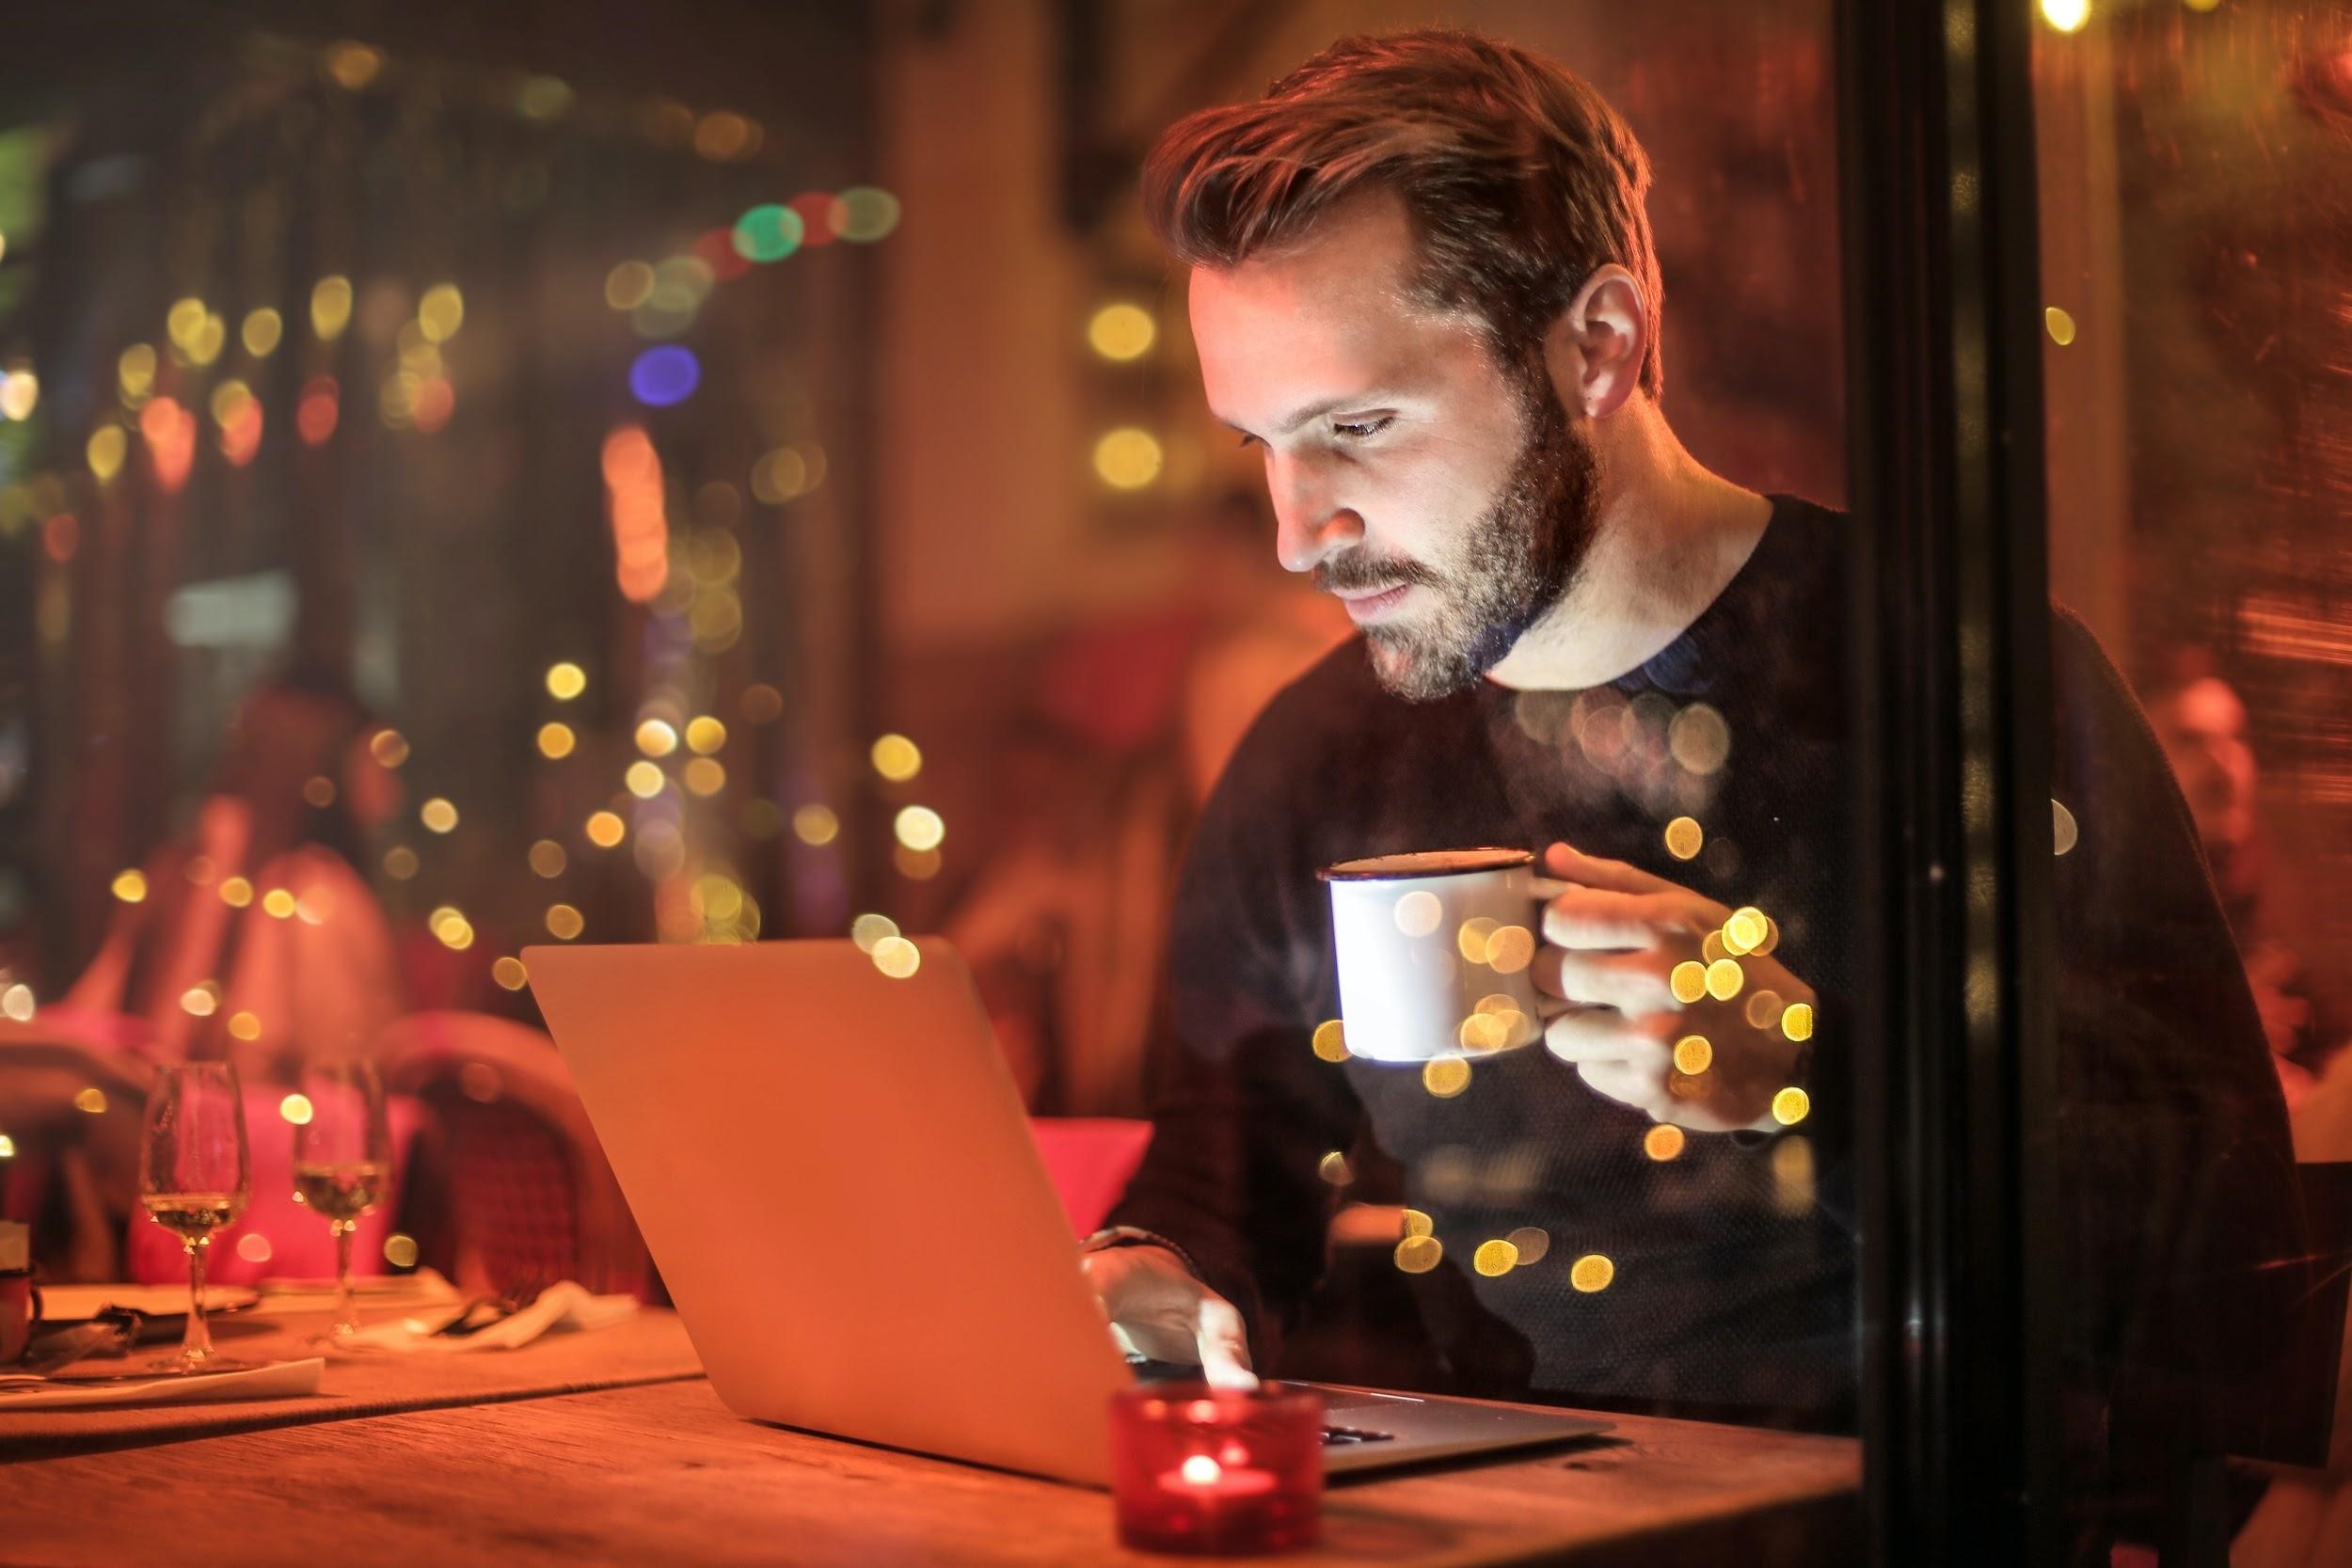 online-working-studying-laptop-man on laptop